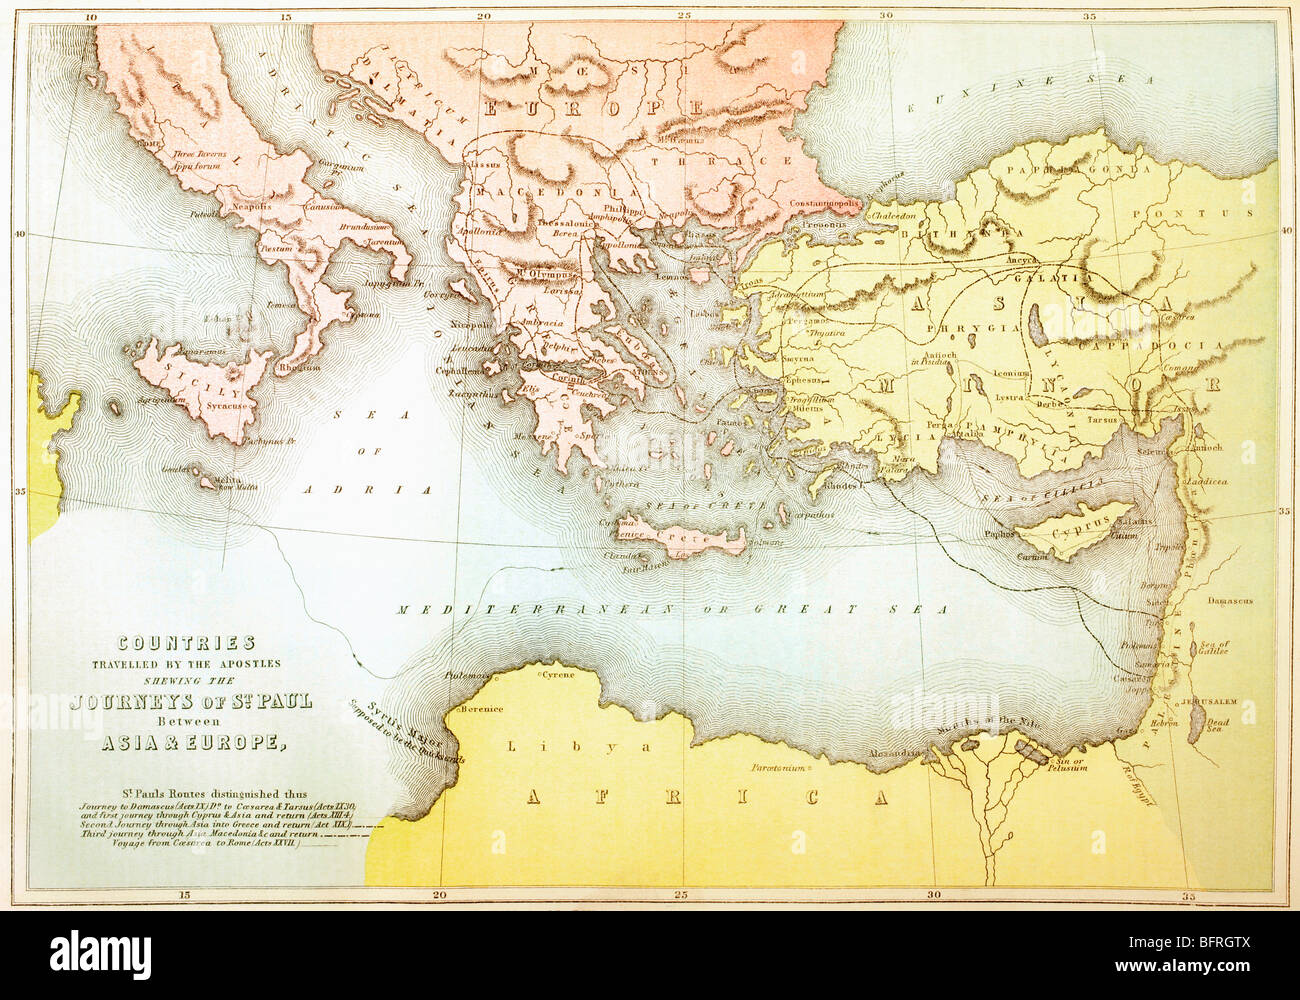 Länder von den Aposteln gereist und zeigt die Reisen des Paulus zwischen Asien und Europa. Stockfoto